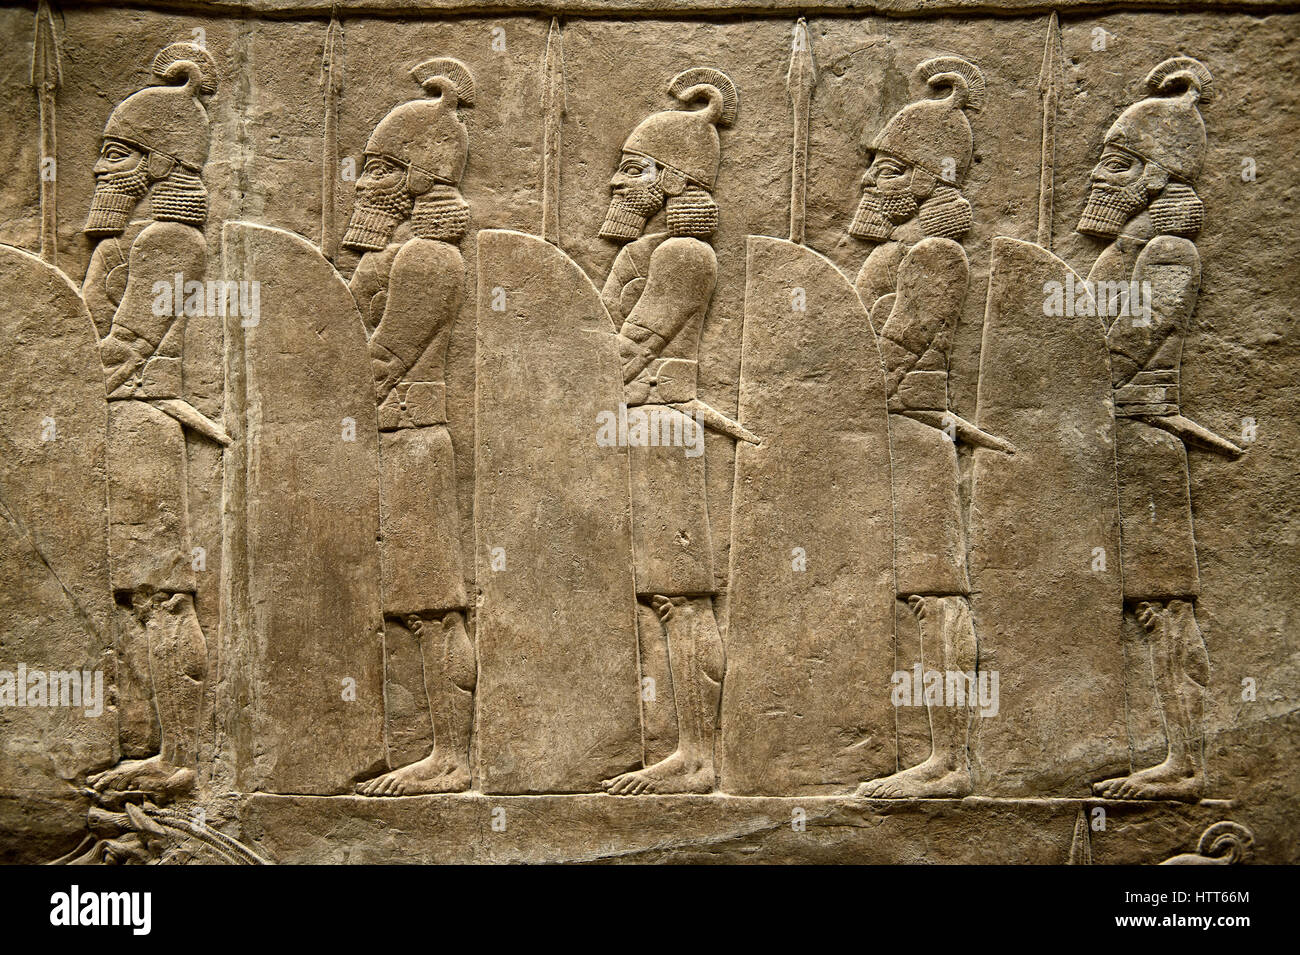 Relieve Asirio escultura grupo de soldados que recubren la carretera del rey Ashurnasirpal lion Hunt. Palacio de Nínive, Al Norte, Iraq, 668-627 A.C. B Foto de stock